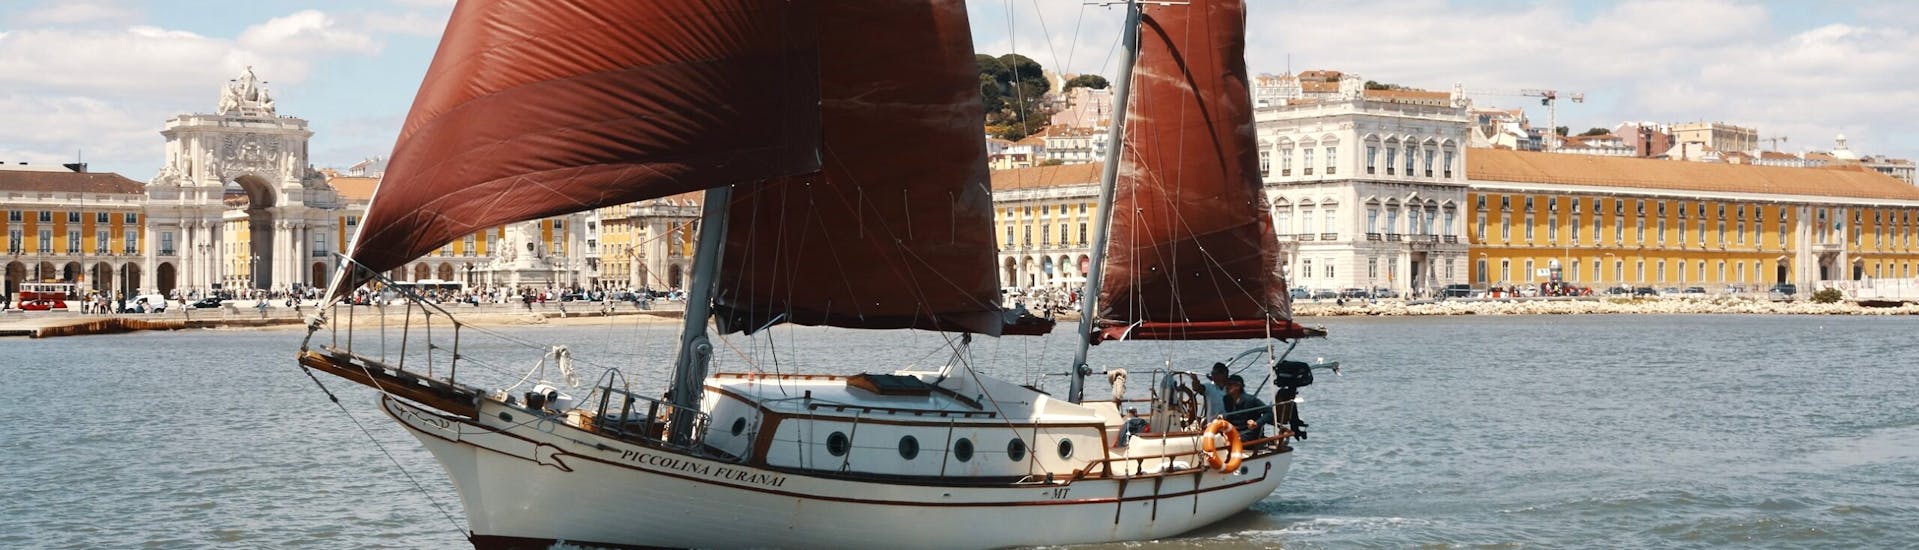 Privé zeilboottocht van Lissabon naar Taag (Tejo).